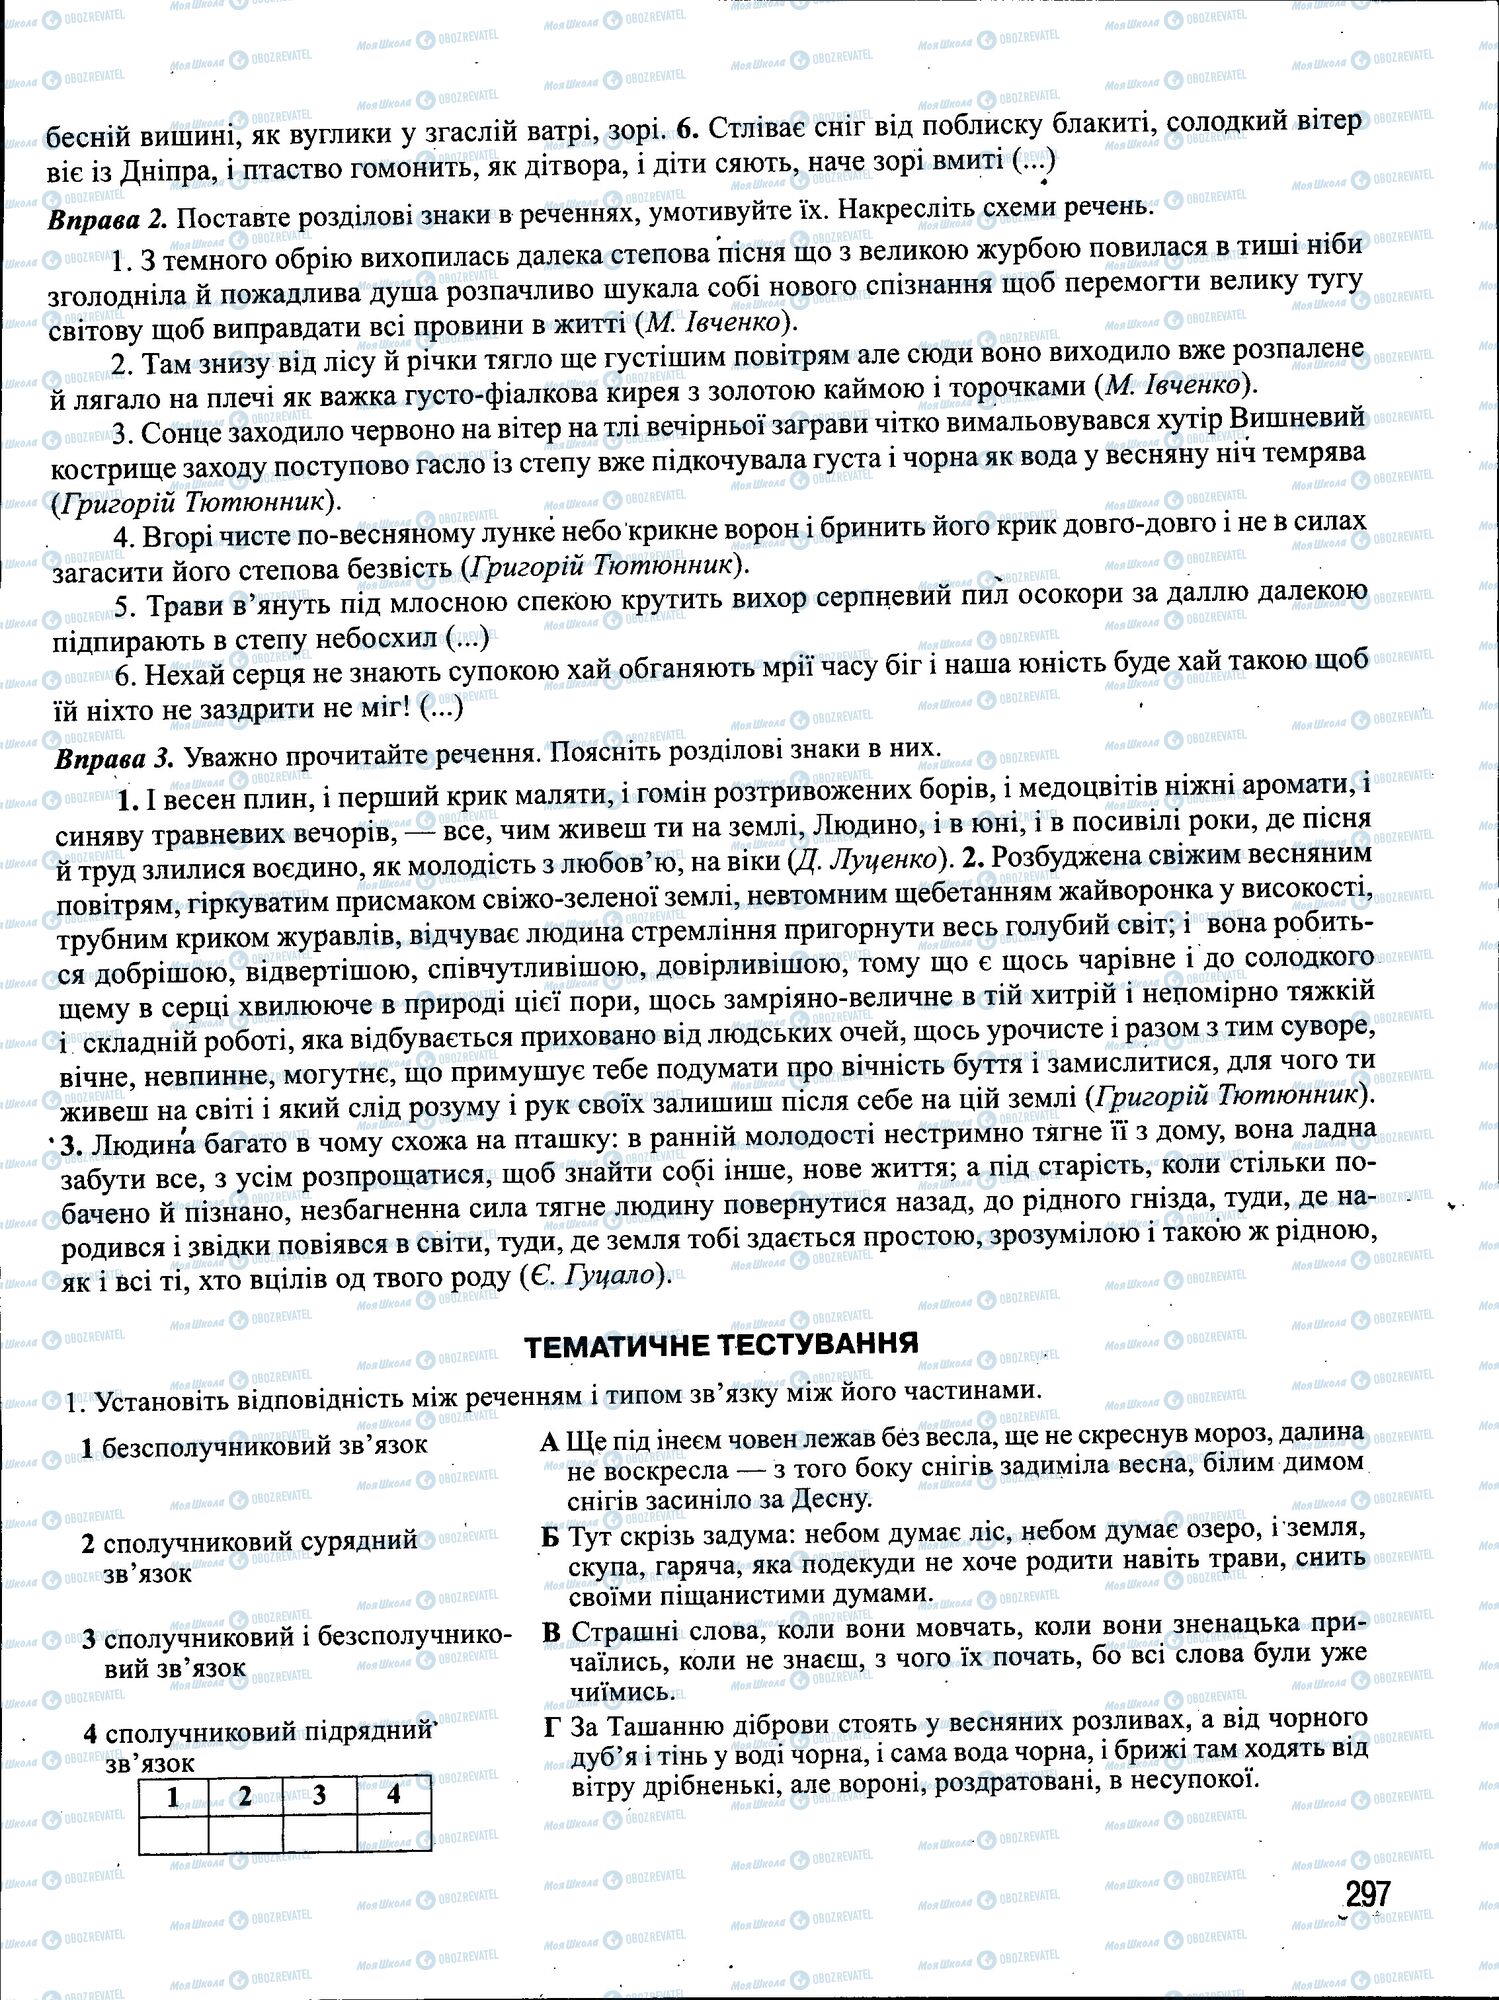 ЗНО Укр мова 11 класс страница 297